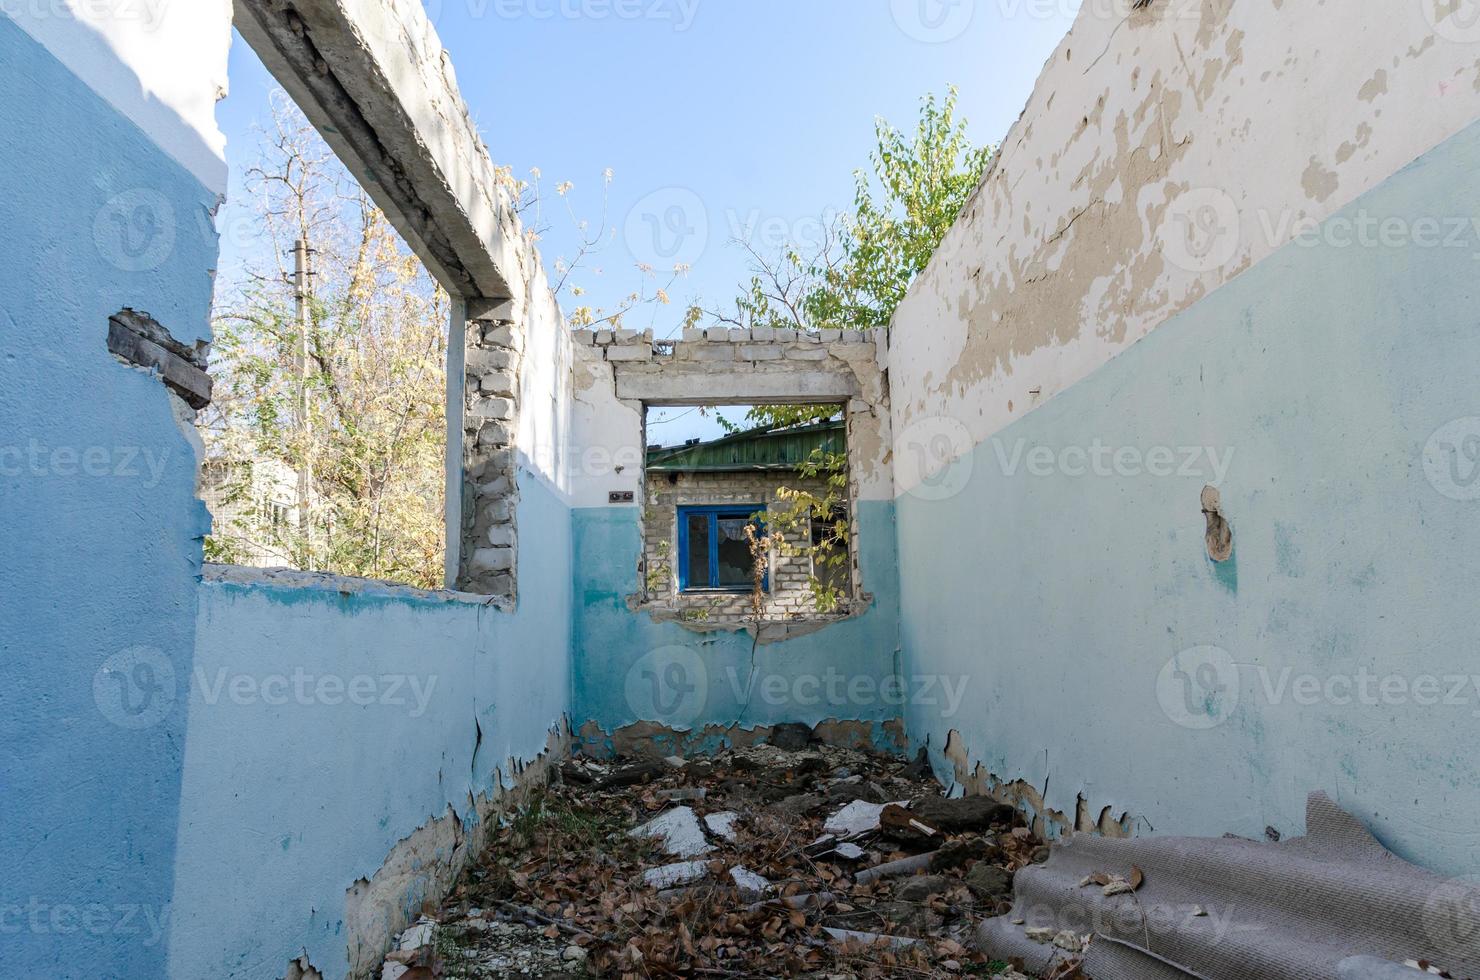 Ruinas de una antigua casa de pueblo abandonada en Ucrania foto